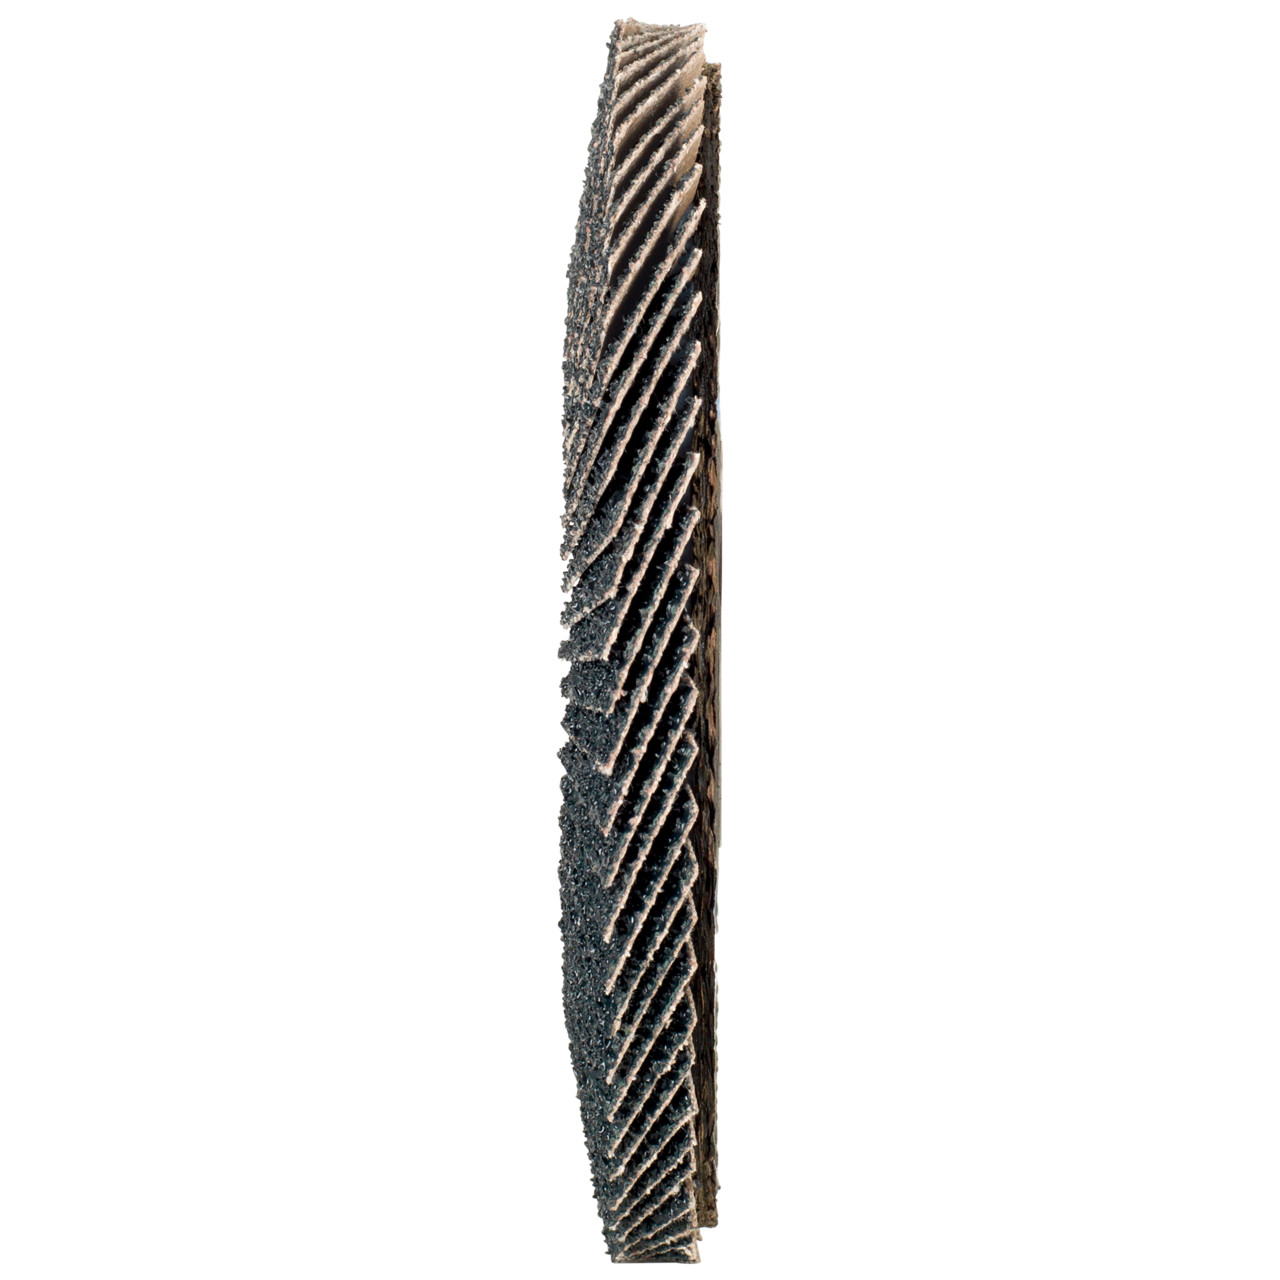 Tyrolit Arandela dentada DxH 115x22,2 2en1 para acero y acero inoxidable, P60, forma: 28A - versión recta (versión con cuerpo de soporte de fibra de vidrio), Art. 668687